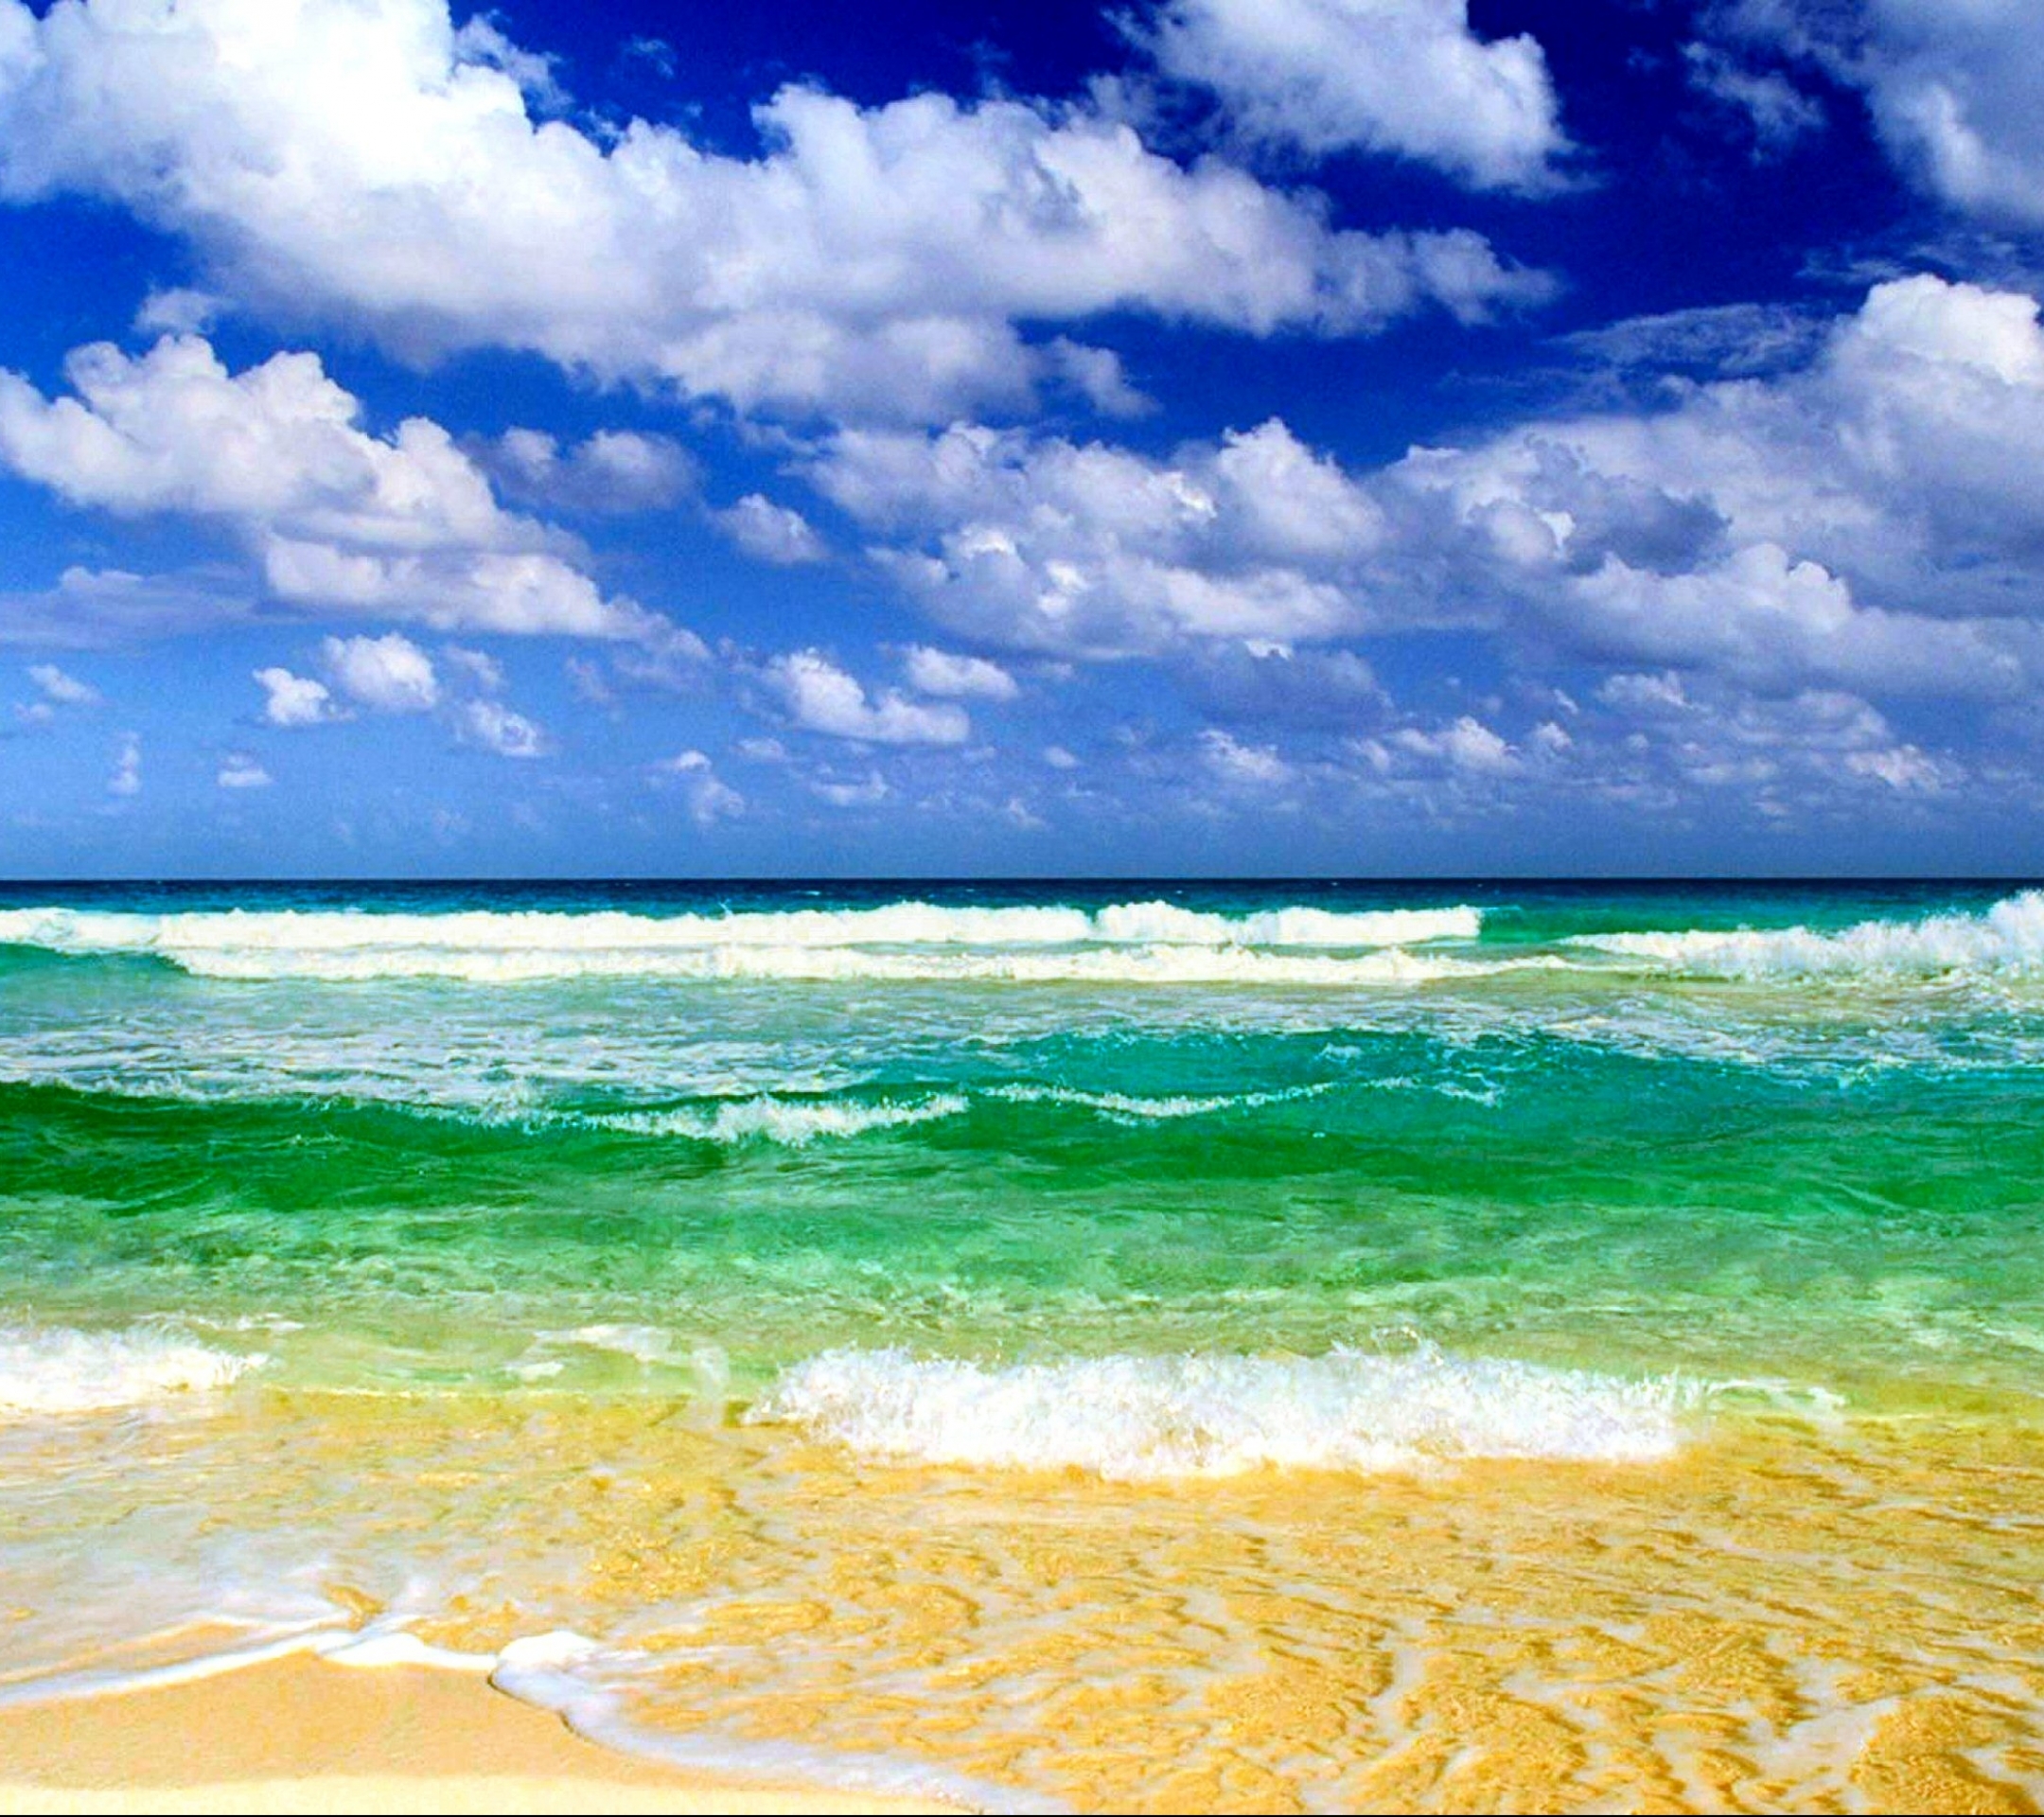 Скачать обои бесплатно Море, Облака, Пляж, Лето, Горизонт, Облако, Волна, Солнечно, Земля/природа картинка на рабочий стол ПК